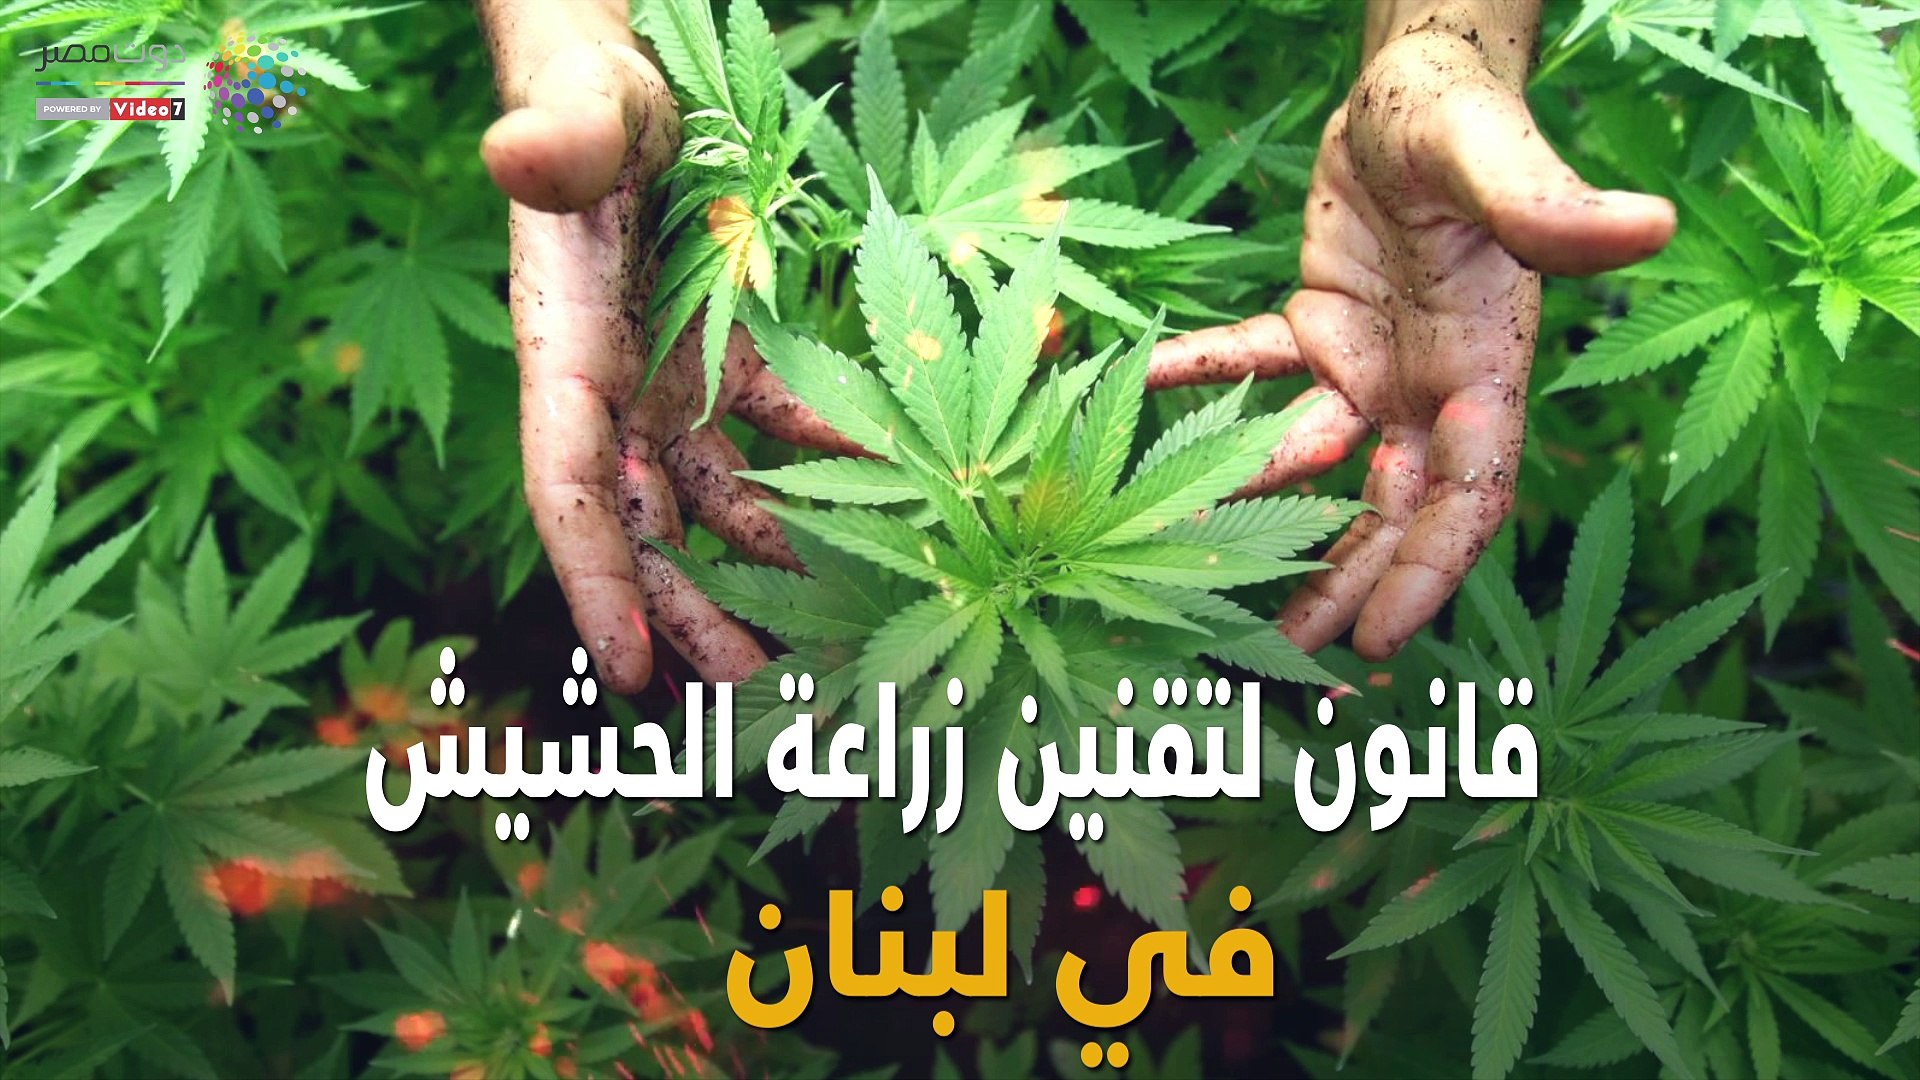 قانون لتقنين زراعة الحشيش في لبنان - فيديو Dailymotion